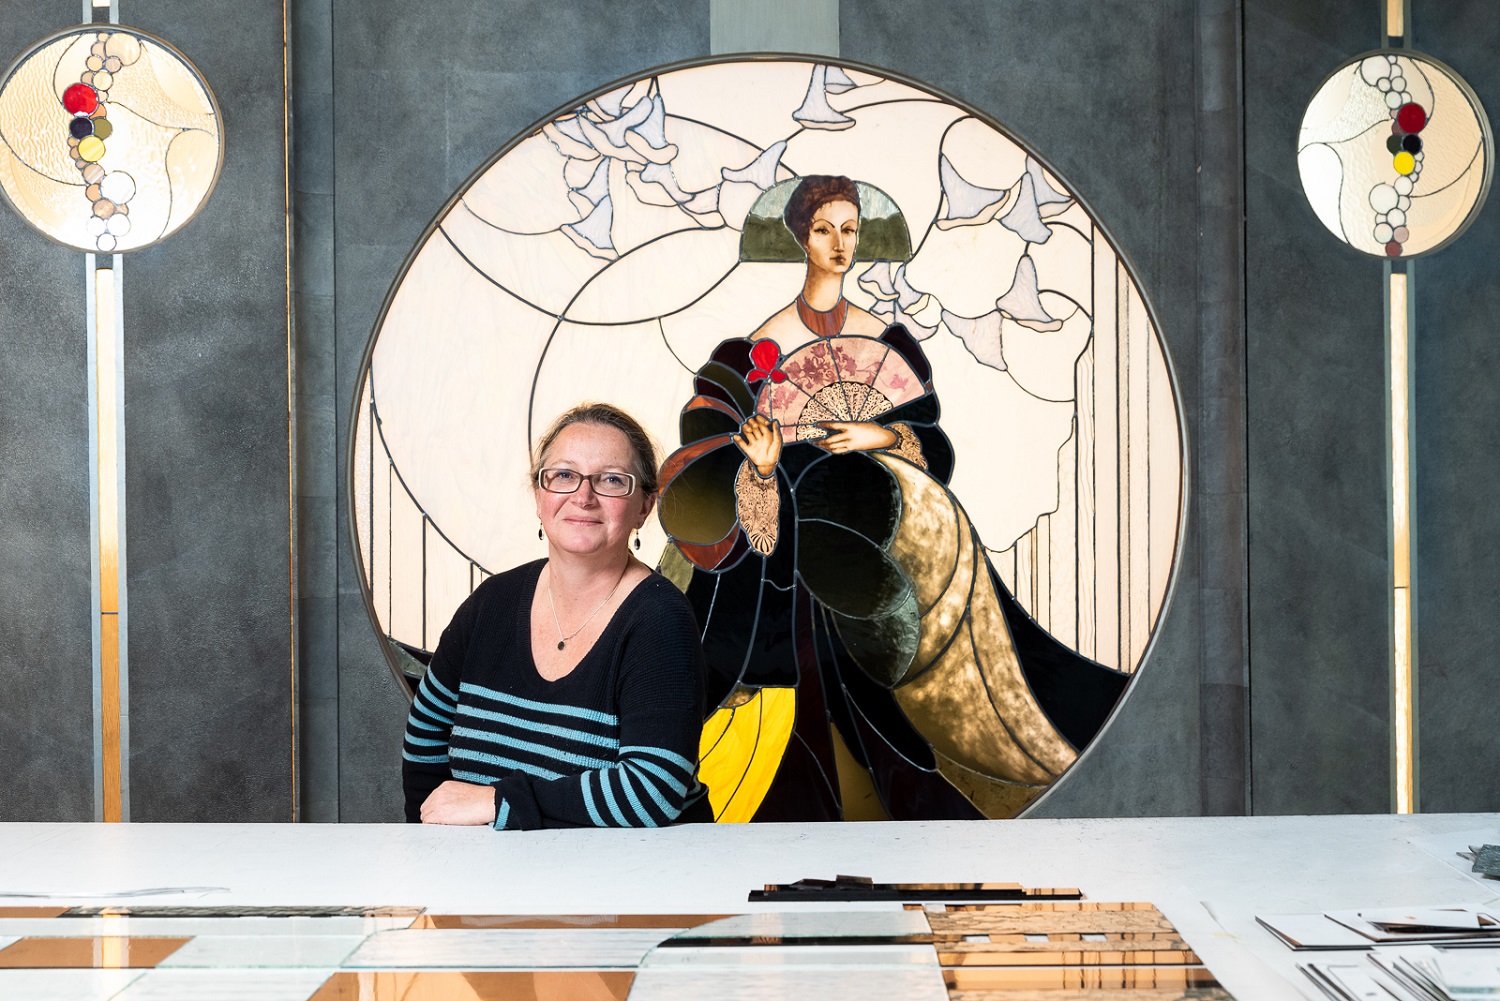 Nolwenn de Kergommeaux, a woman master glassmaker, at the Viaduc des arts